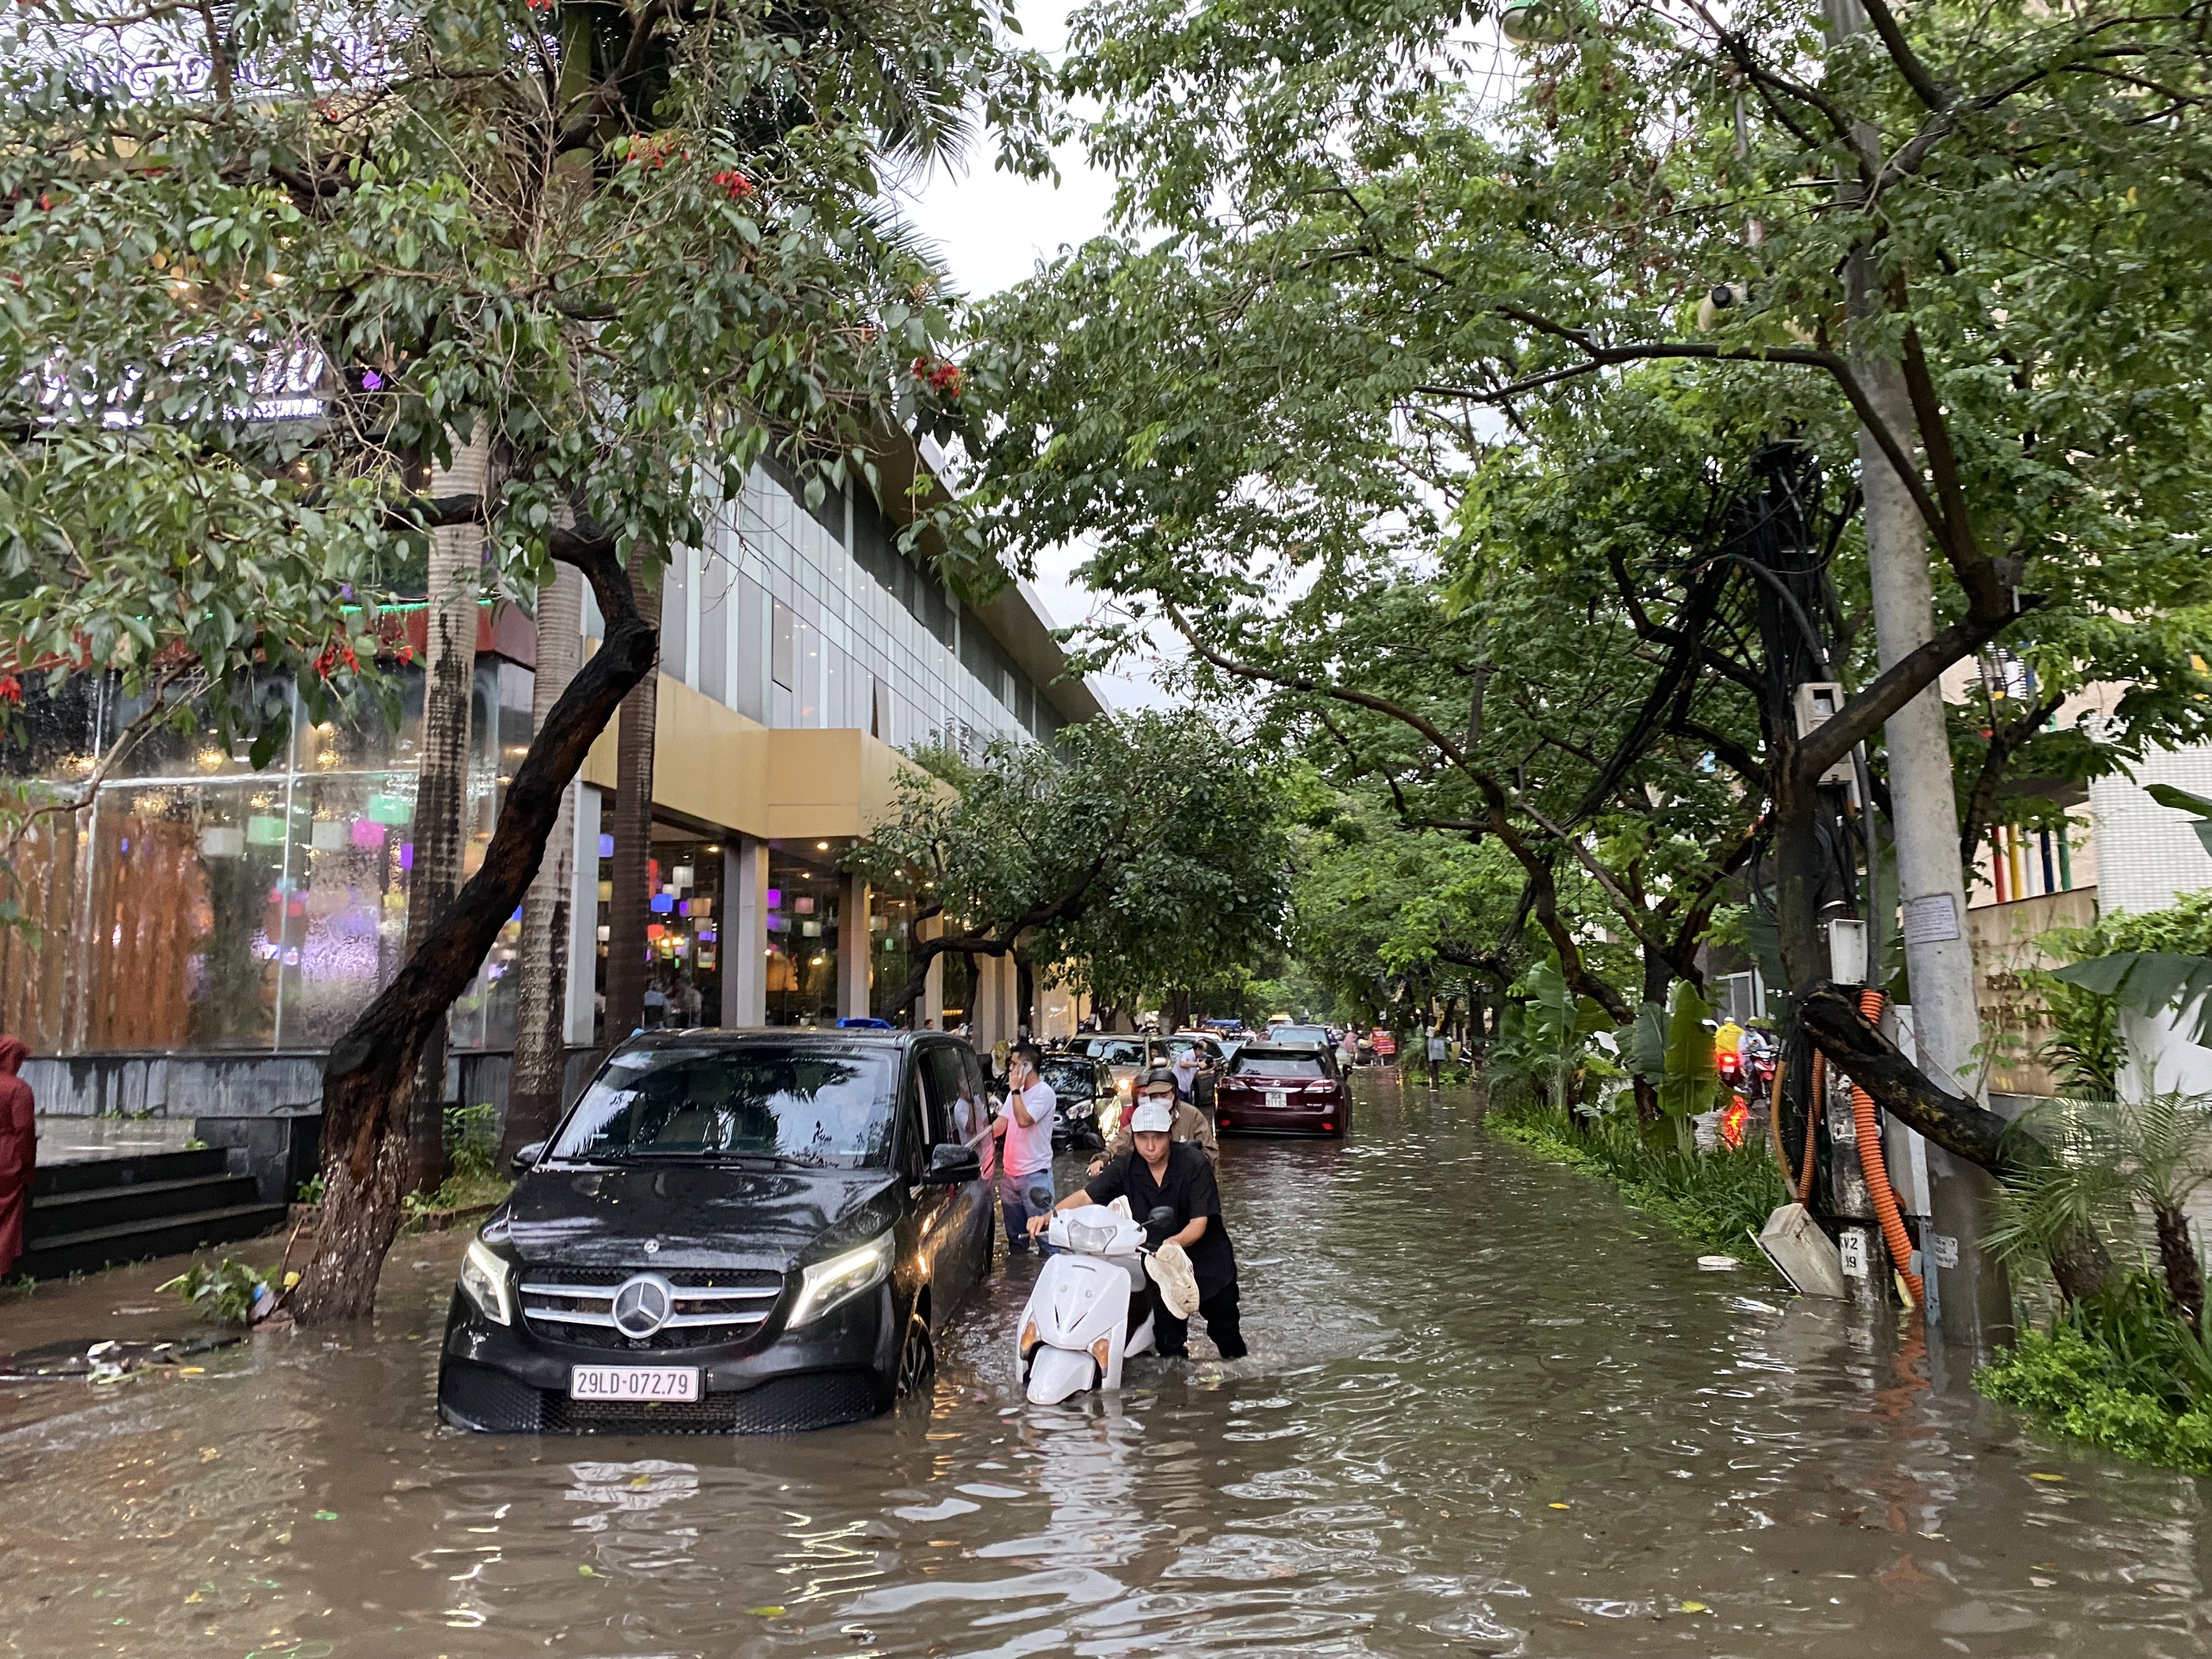 Điều gì có thể tuyệt vời hơn khi bạn đi dạo trong mưa đường phố Hà Nội đầy lãng mạn? Hãy để hình ảnh này giúp bạn tận hưởng những cảm xúc đó mà không gặp khó khăn về thời tiết.